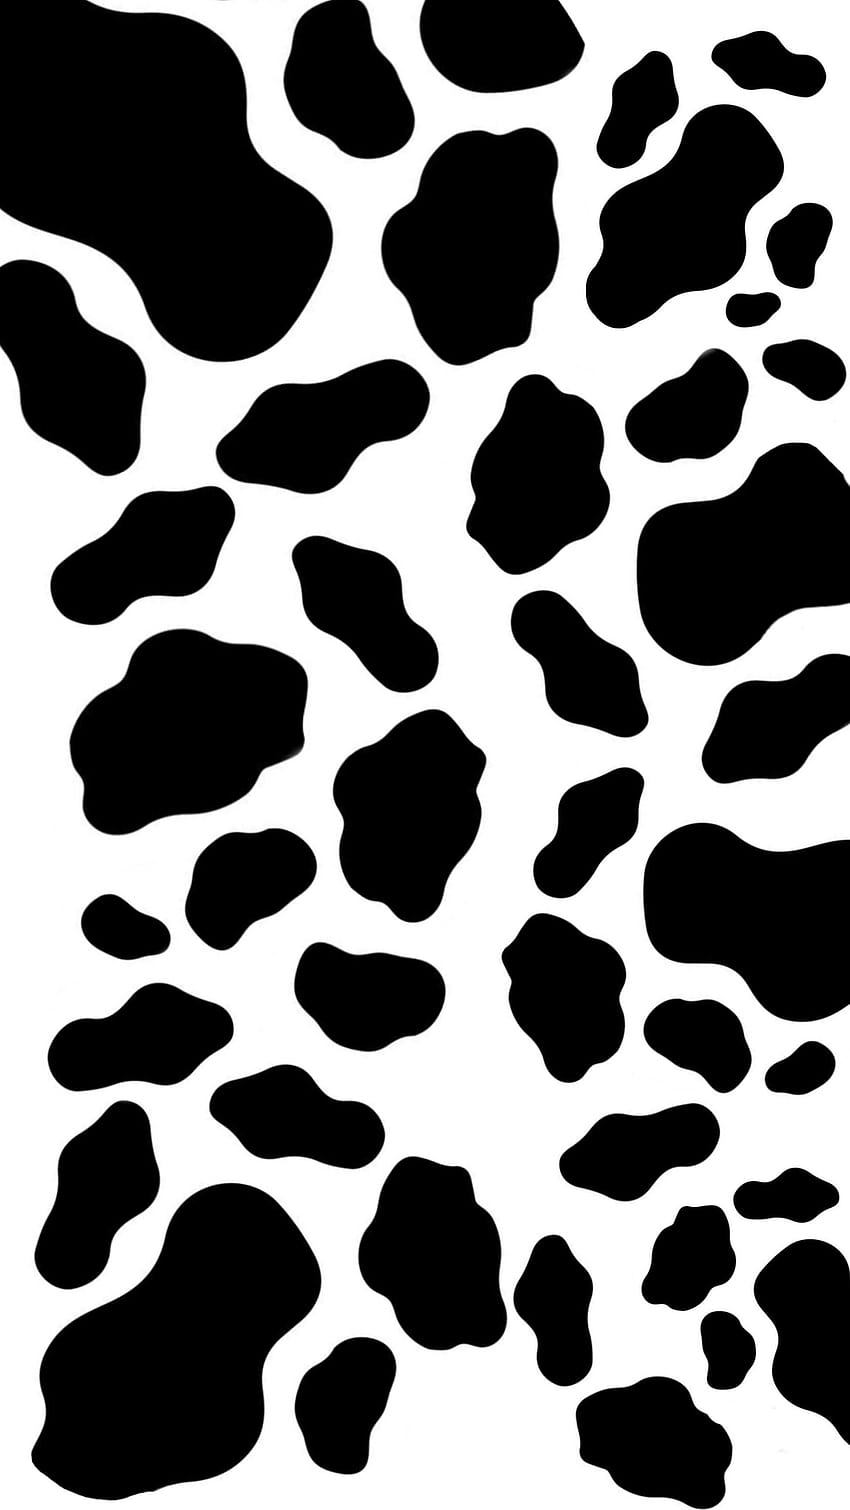 iPhone Cow Print, cetakan sapi wallpaper ponsel HD